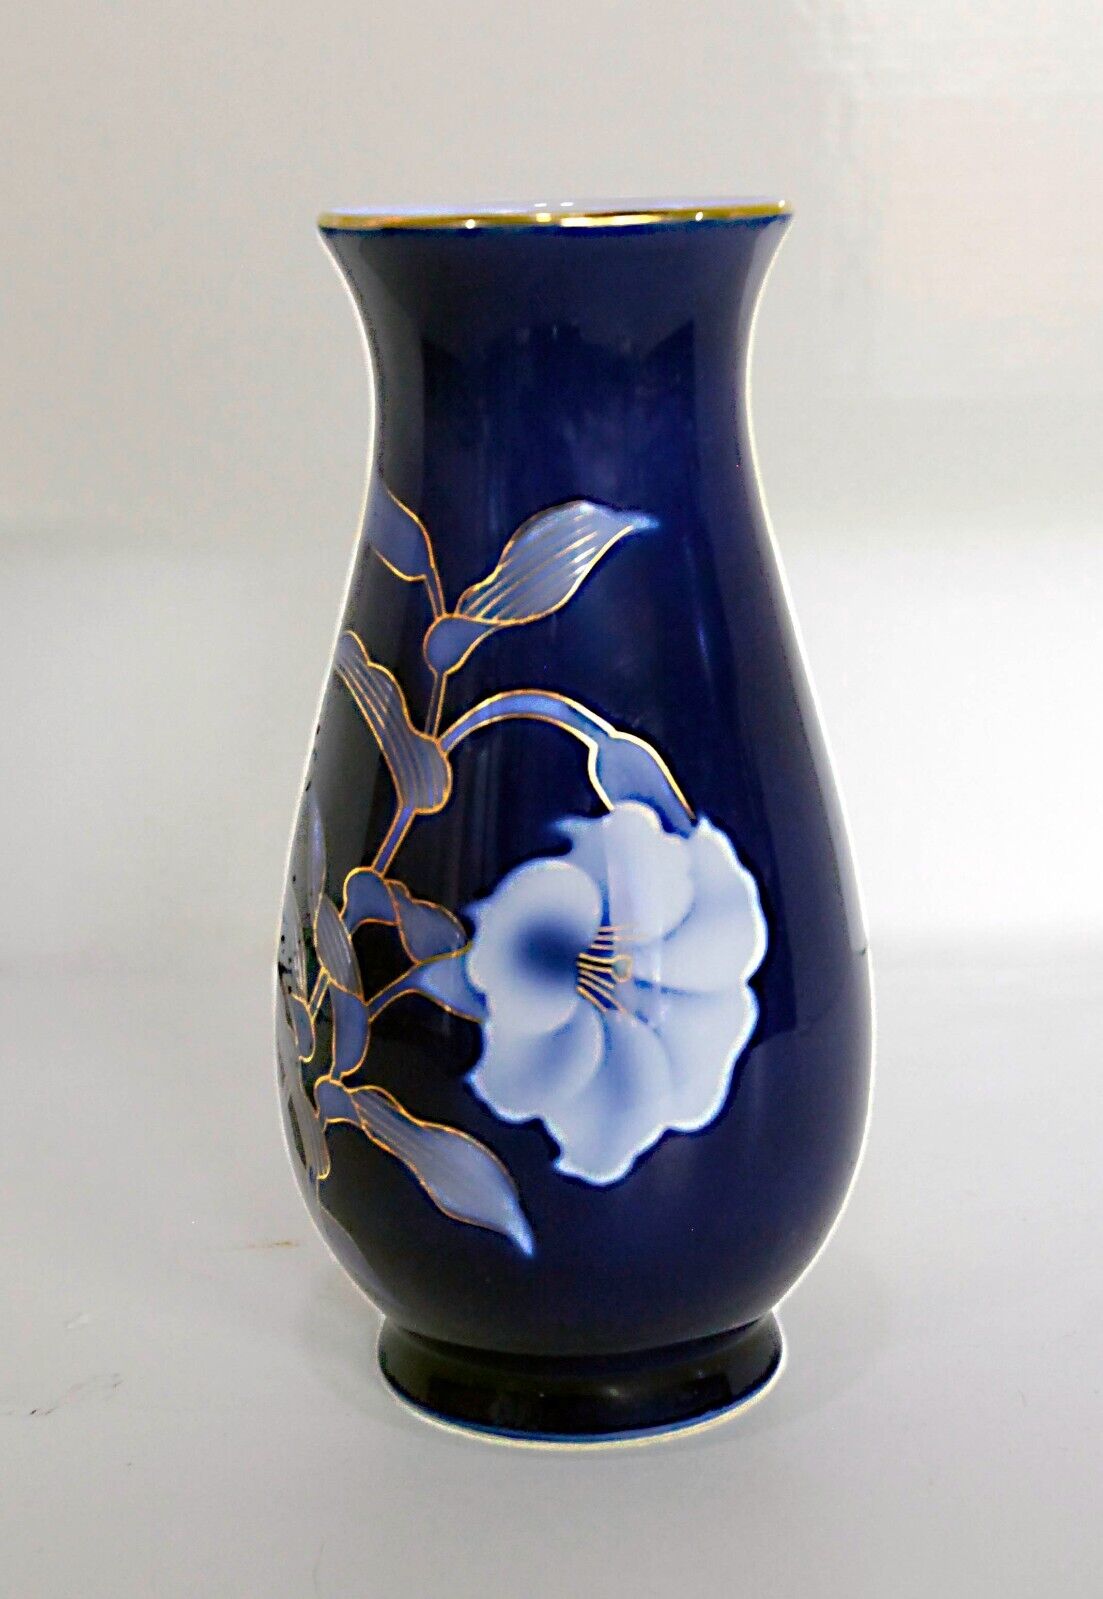 fukagawa orchid cobalt blue vase H:8.5” Vintage